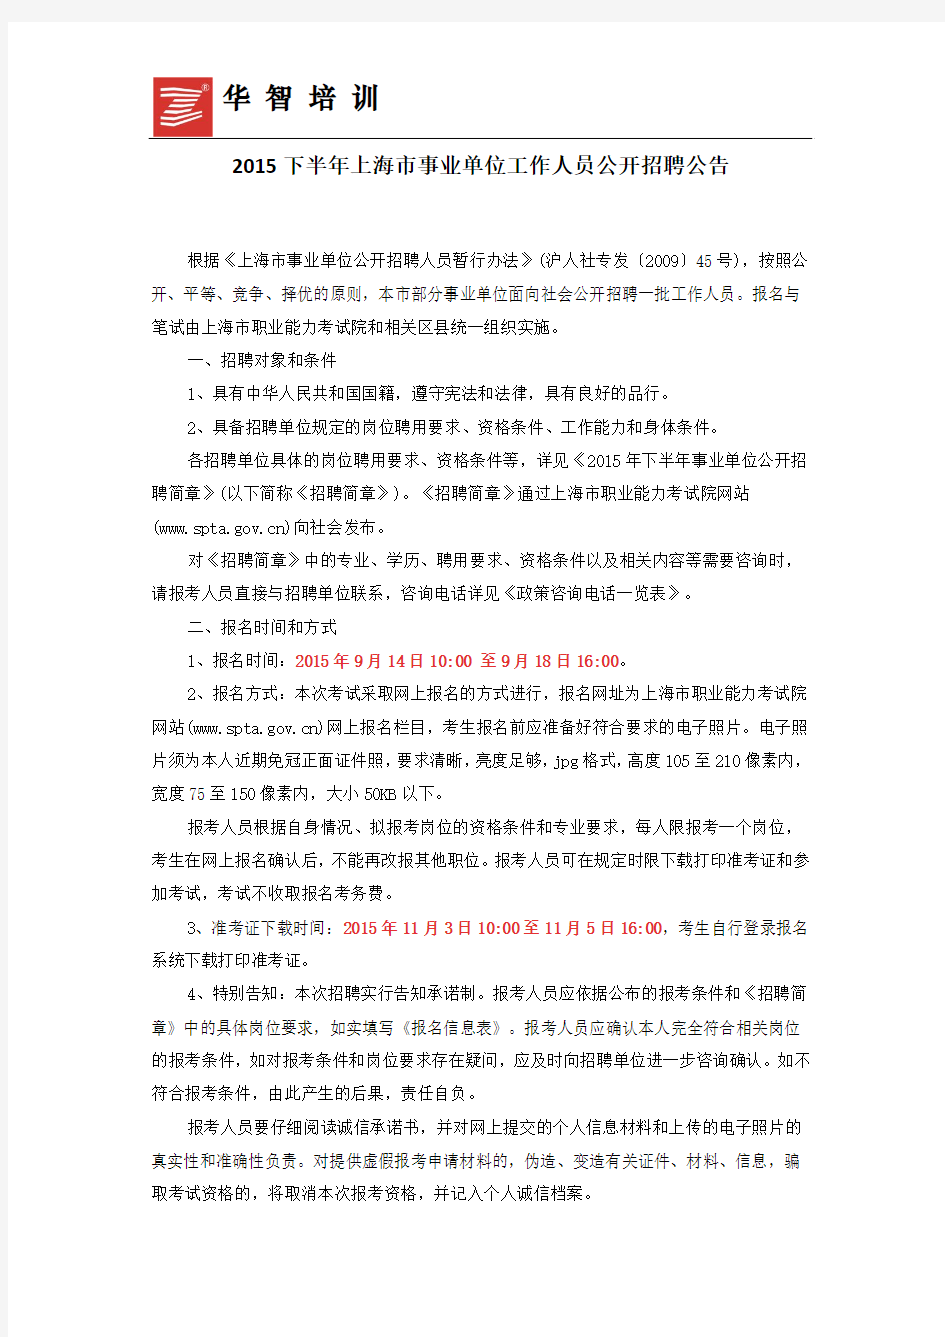 2015下半年上海市事业单位工作人员公开招聘公告